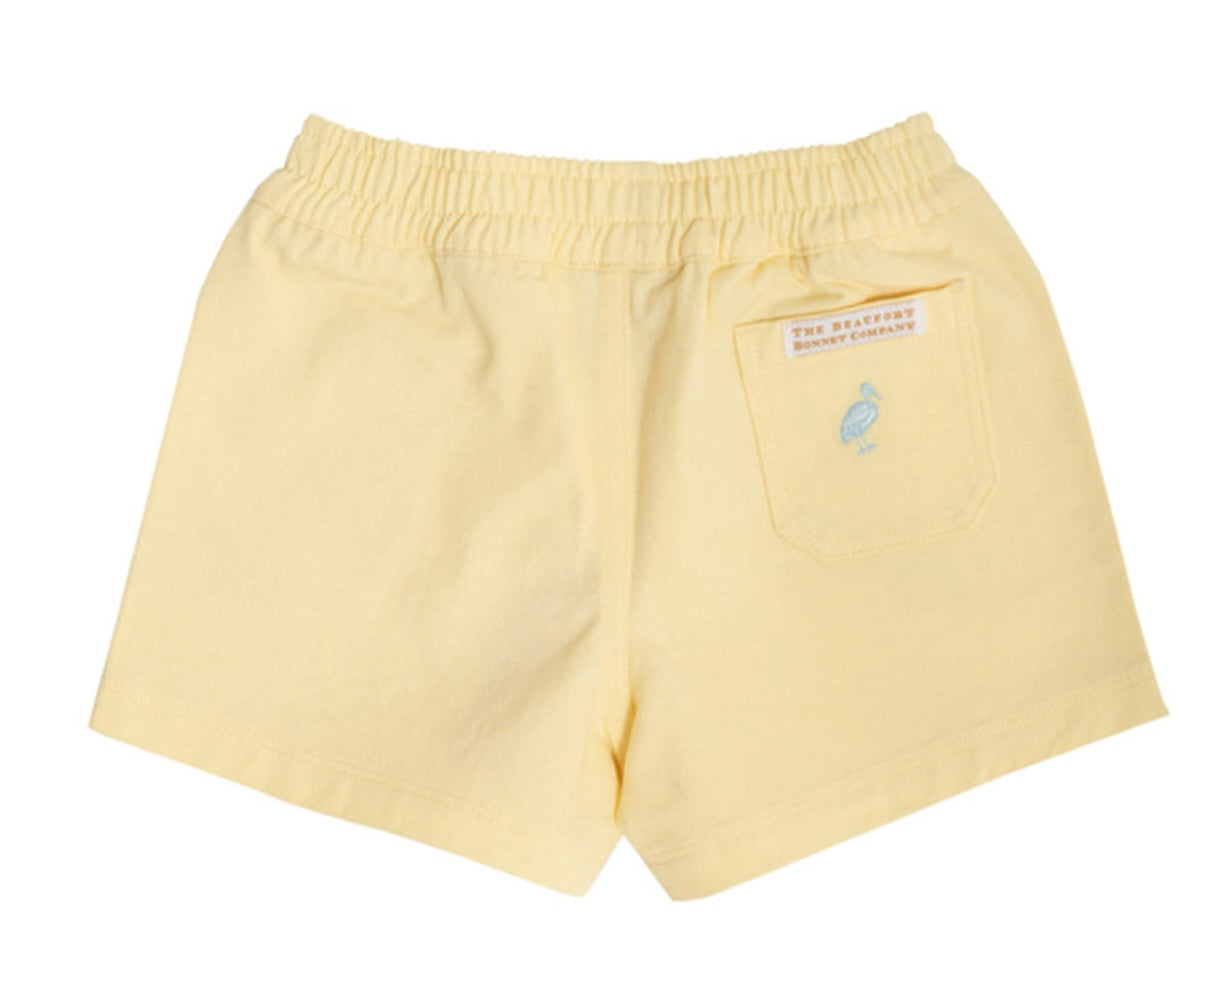 Sheffield Shorts - Bellport Butter Yellow